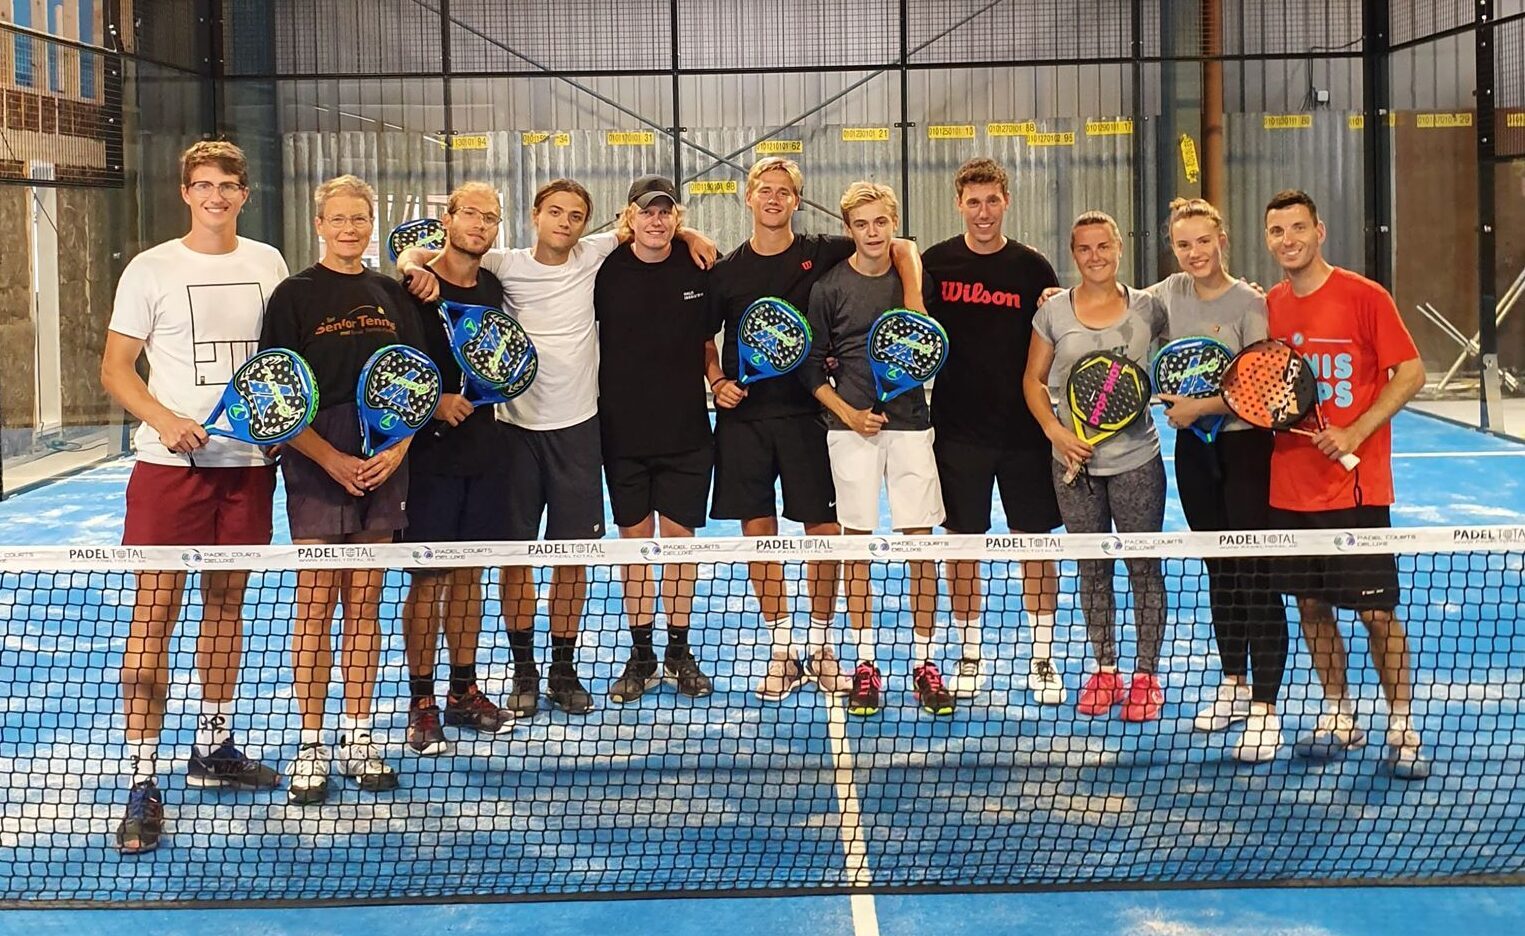 modtagende Halloween tro Teambuilding trænerteam - Tennis Club Odense Tennis Club Odense